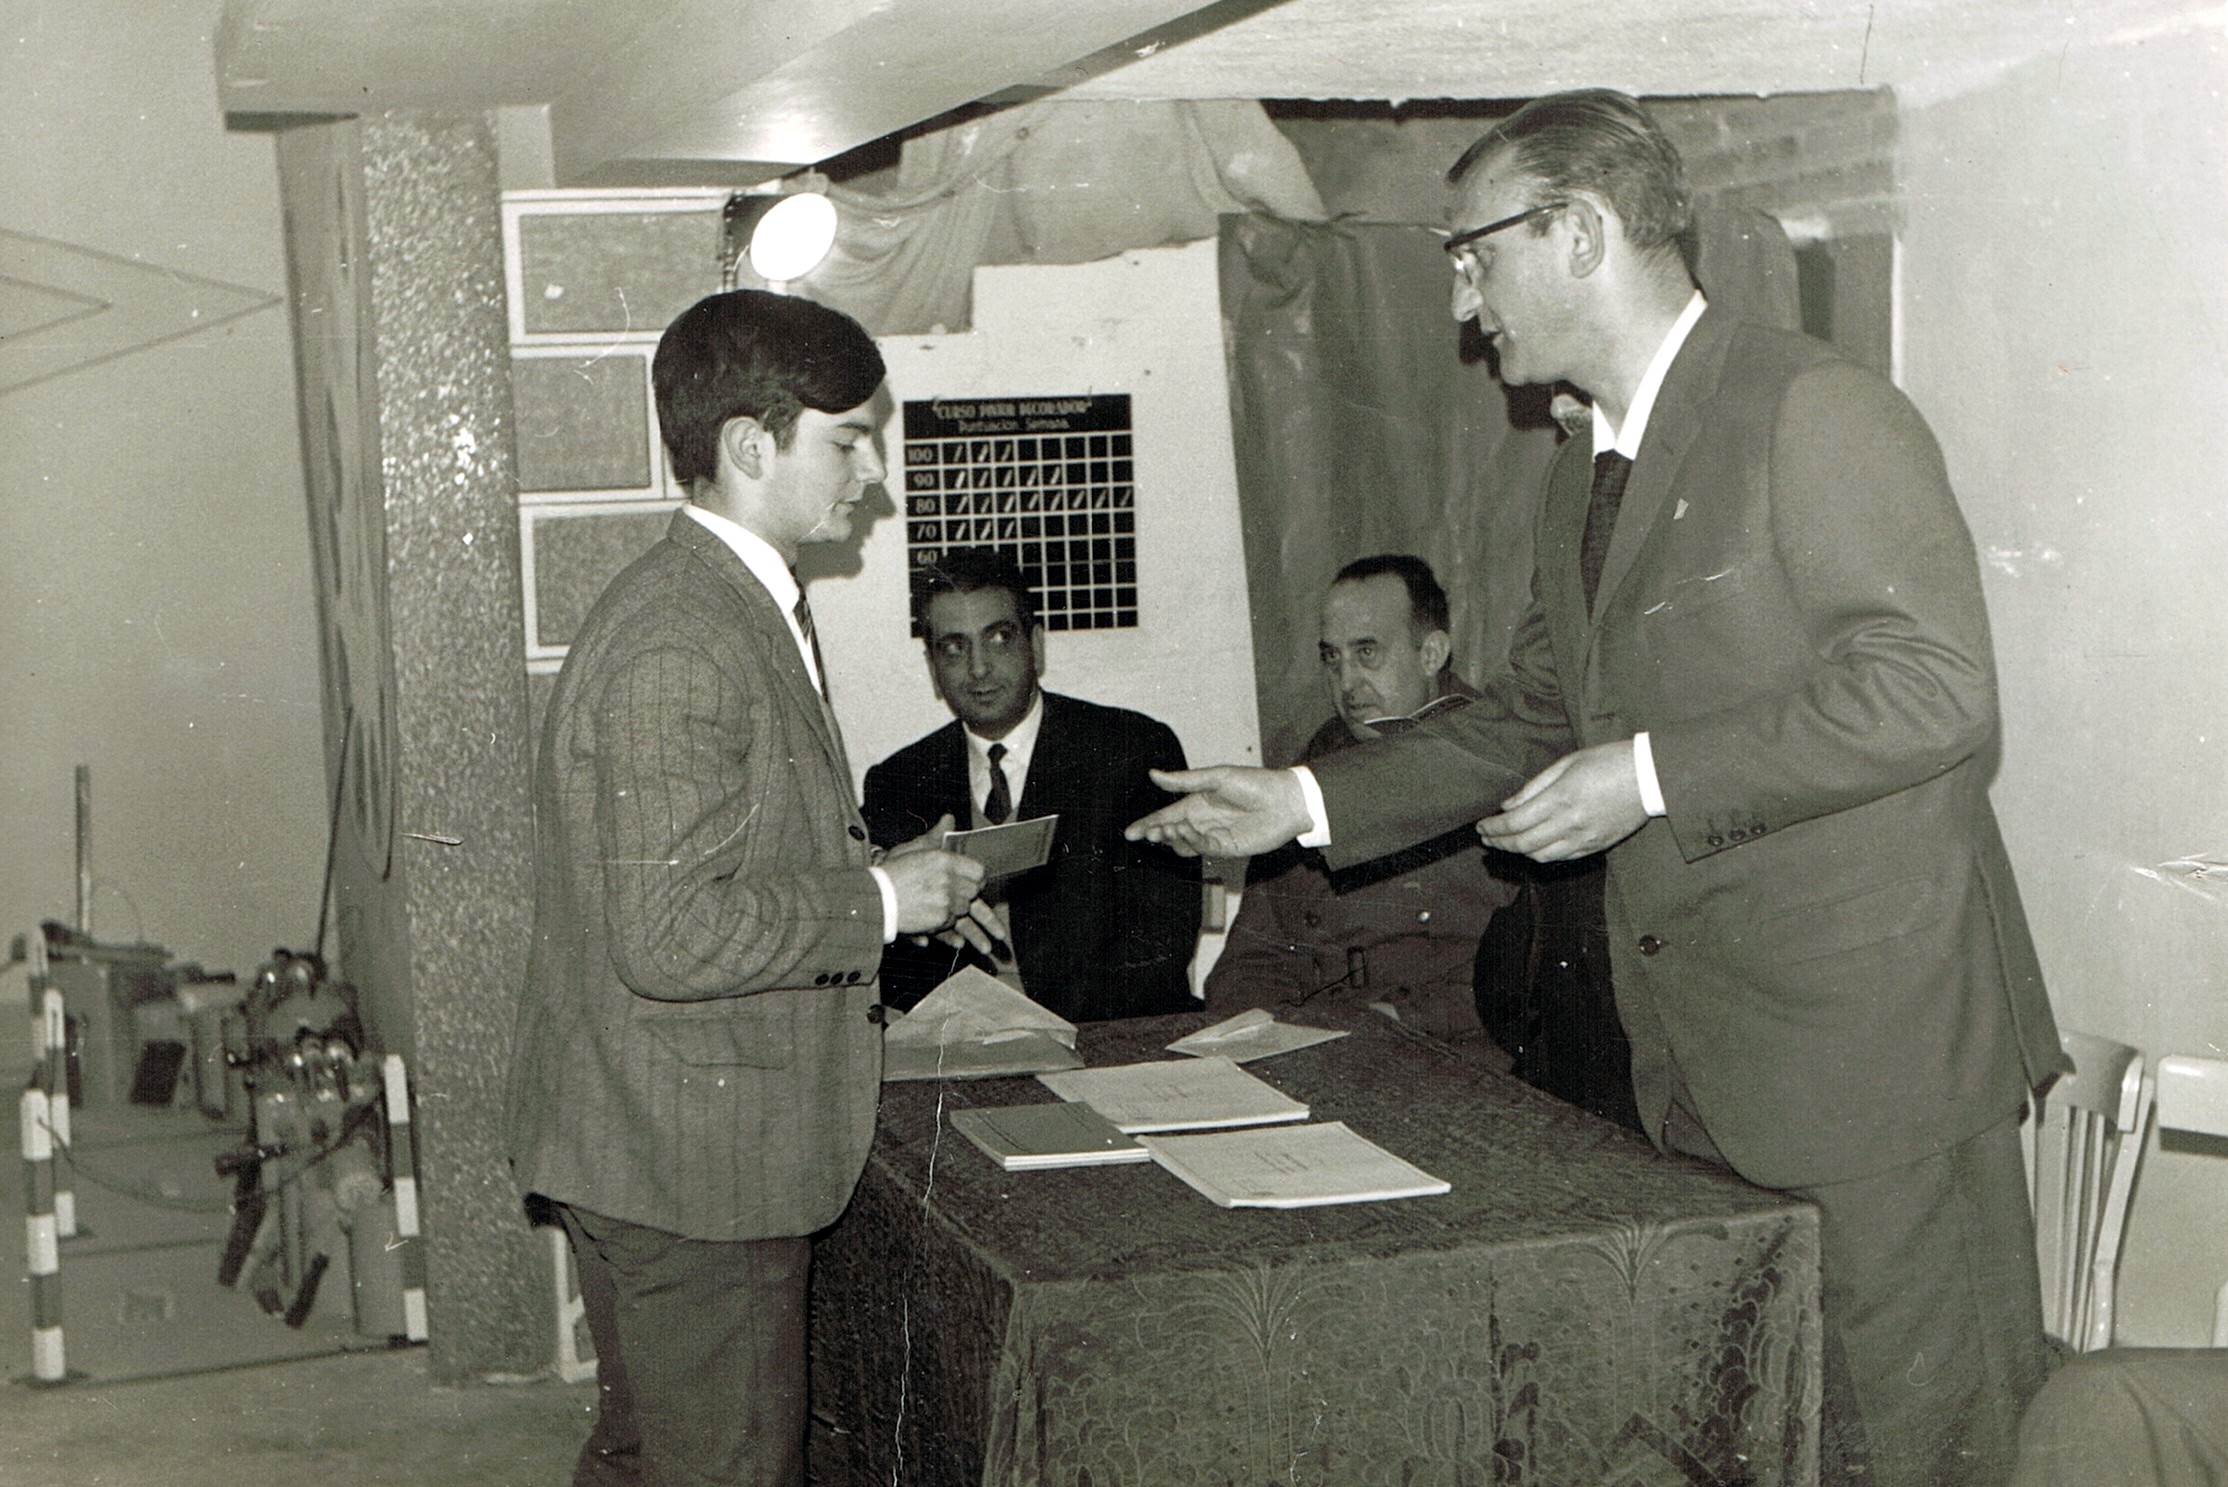 Ampliar: O Alcalde Perea dame o título de Pintor Decorador, PPO, 1966